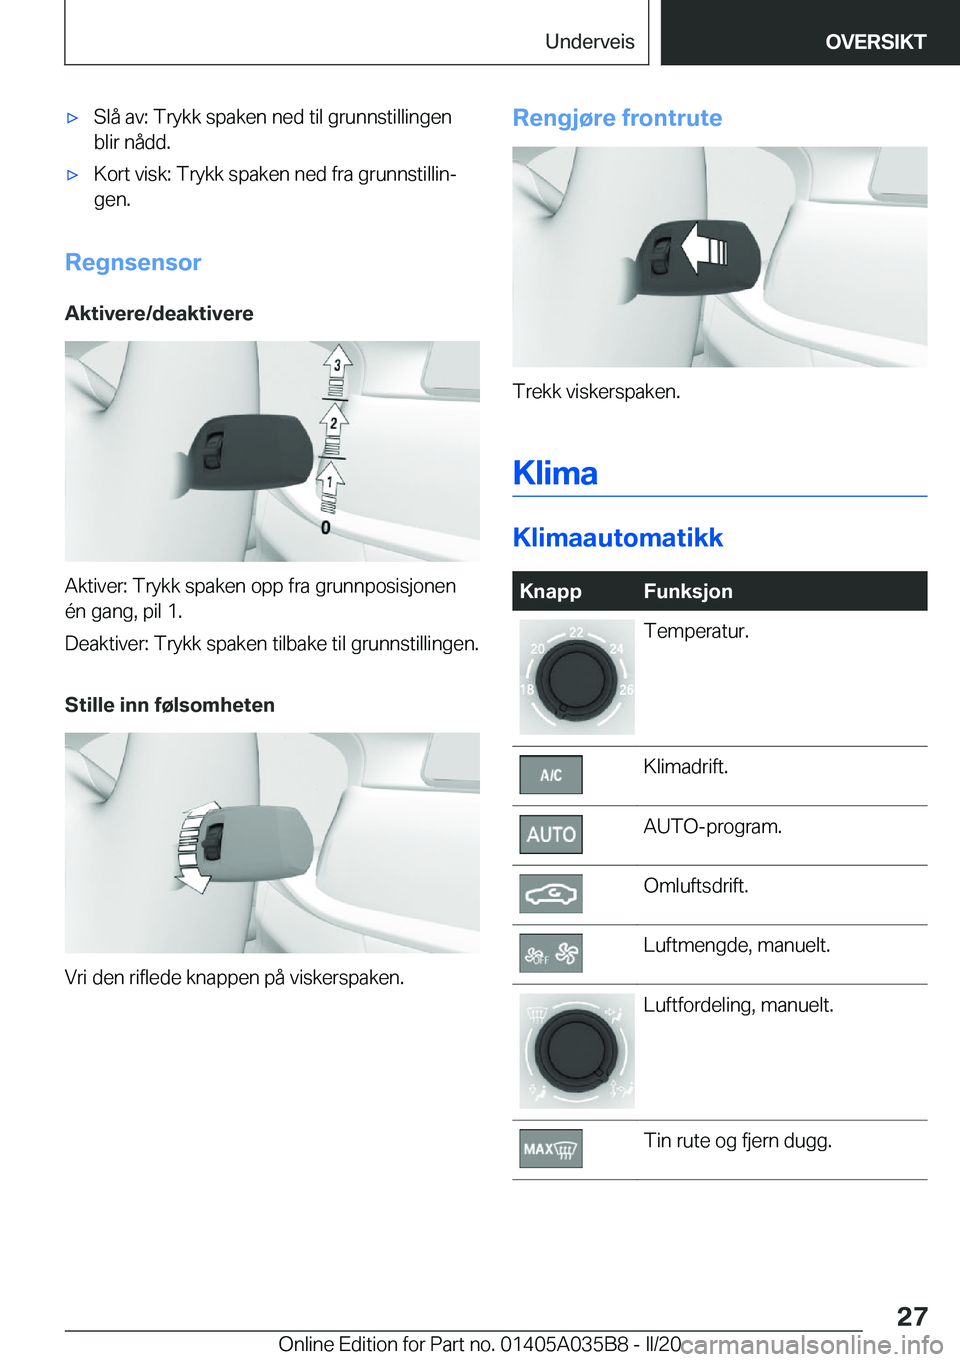 BMW X4 2020  InstruksjonsbØker (in Norwegian) x�S�l�å��a�v�:��T�r�y�k�k��s�p�a�k�e�n��n�e�d��t�i�l��g�r�u�n�n�s�t�i�l�l�i�n�g�e�n
�b�l�i�r��n�å�d�d�.x�K�o�r�t��v�i�s�k�:��T�r�y�k�k��s�p�a�k�e�n��n�e�d��f�r�a��g�r�u�n�n�s�t�i�l�l�